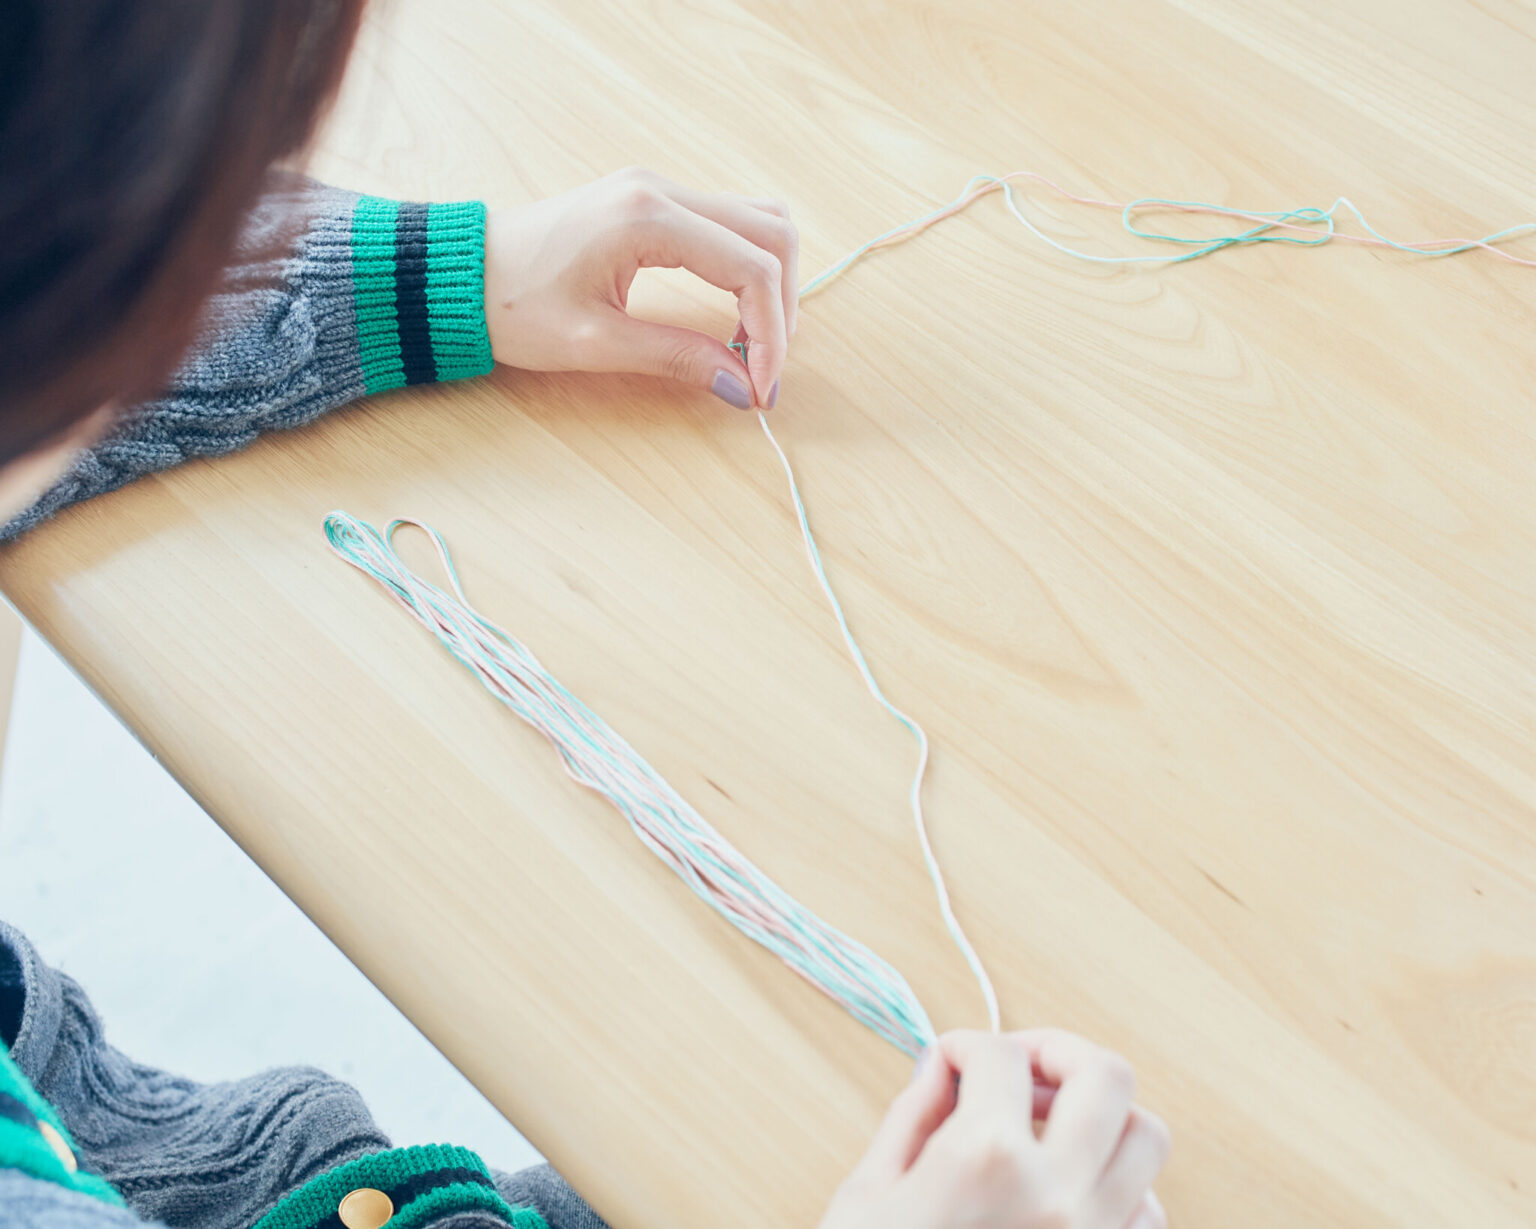 2色の糸をより合わせながら、作りたいタッセルの2倍よりやや長めの
幅で1つの束にする